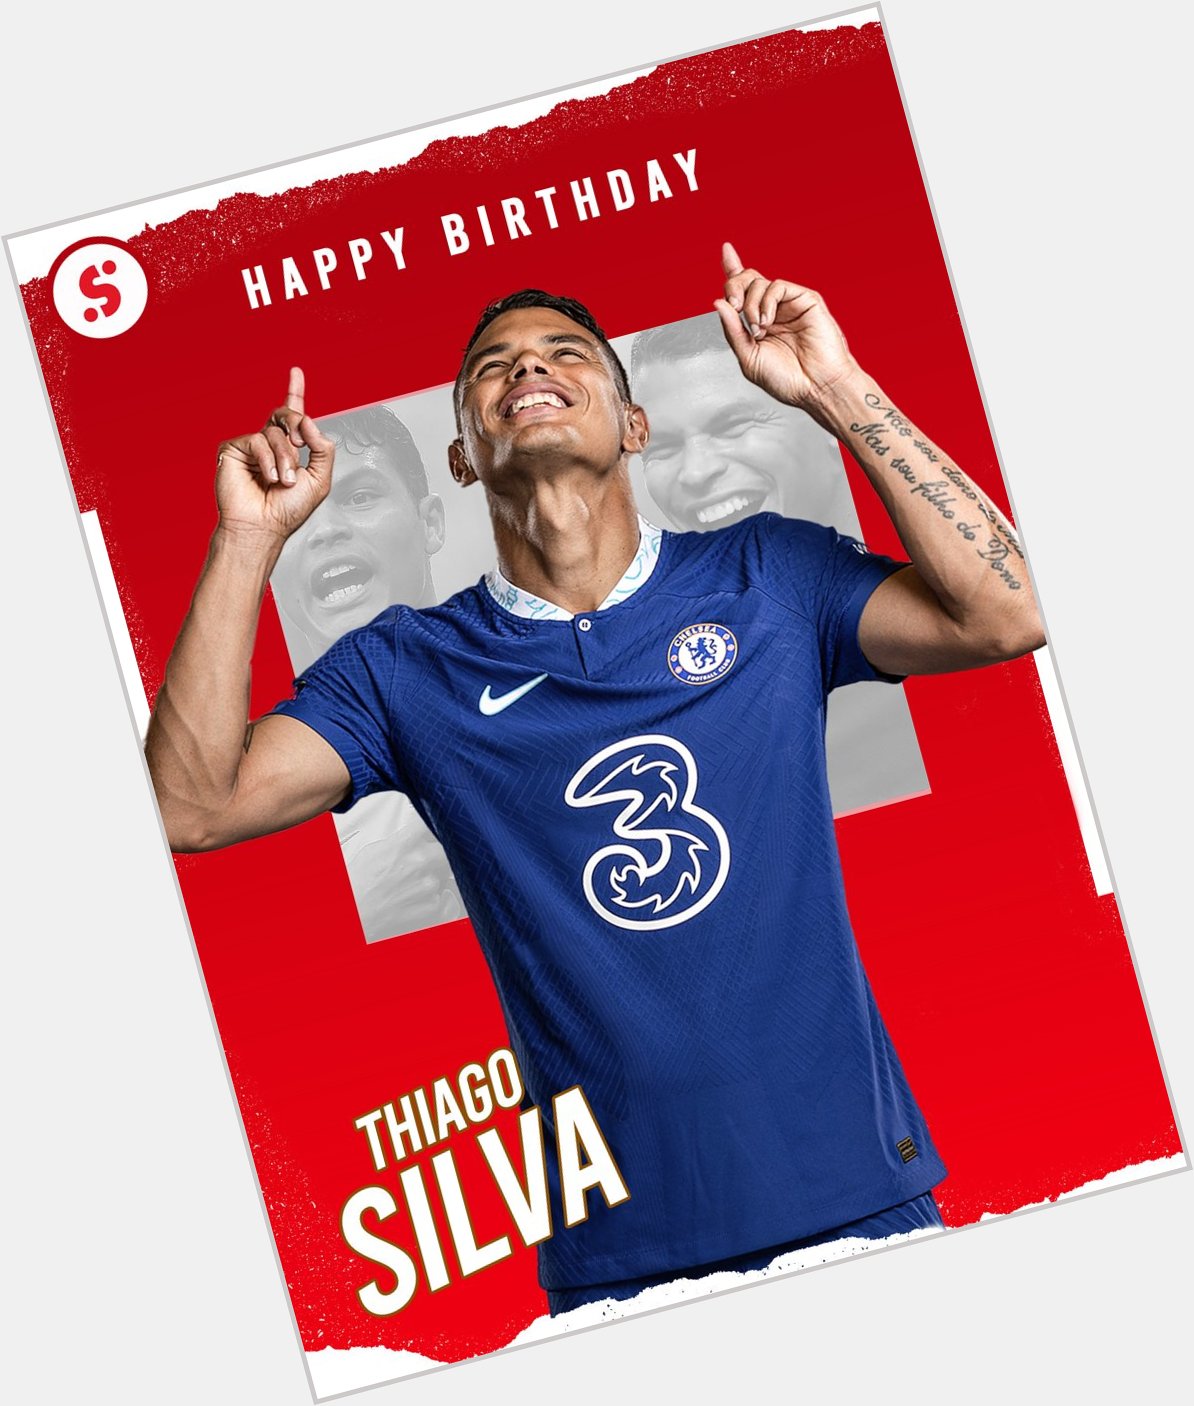 Happy birthday to Thiago Silva, who turns 3  8  today!      